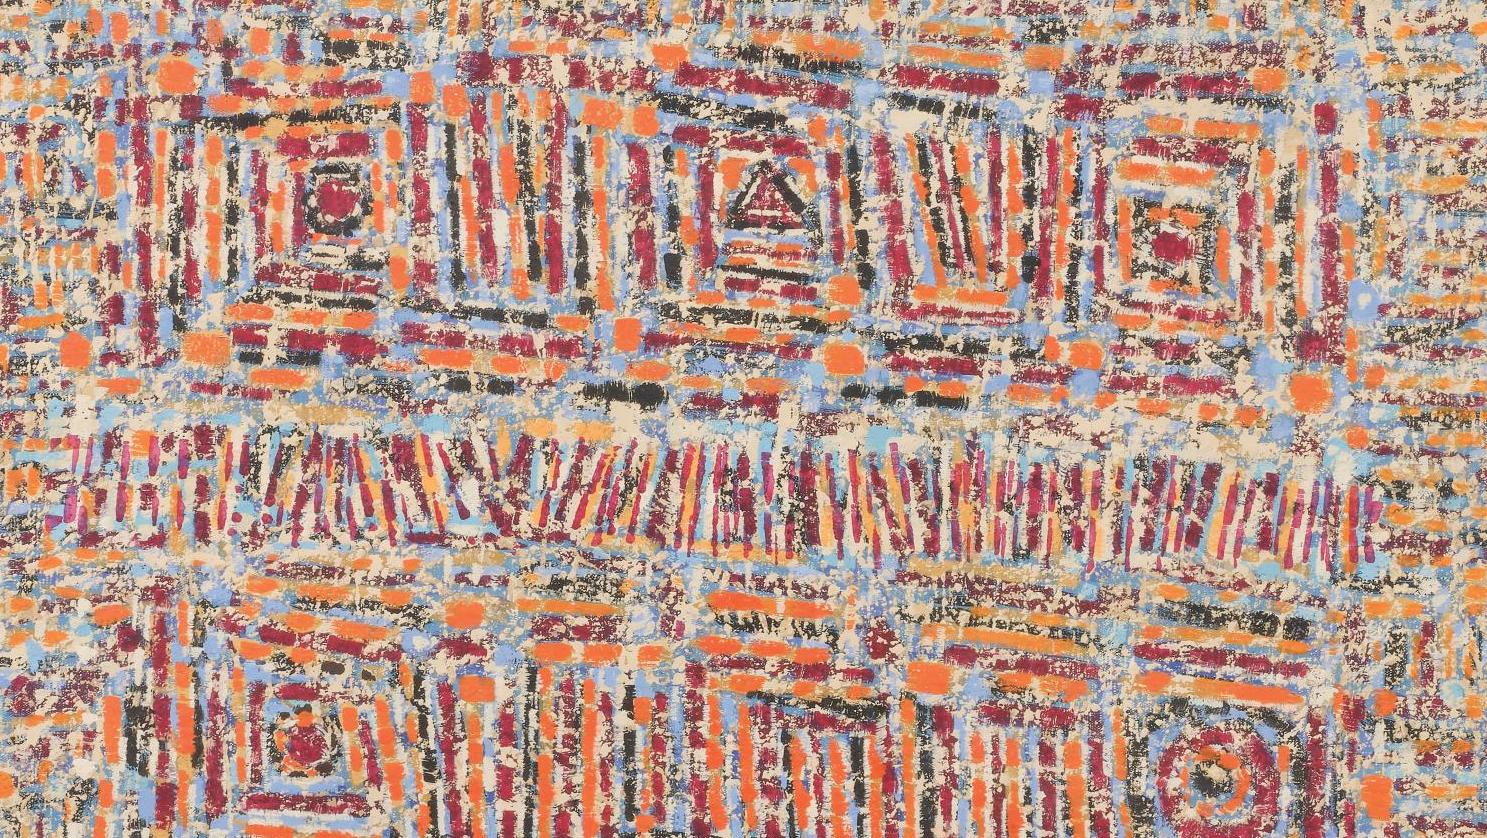 Seundja Rhee (1908-2005), Composition abstraite orange, bleu et violet, 1962, huile... Un moment de contemplation avec Seundja Rhee